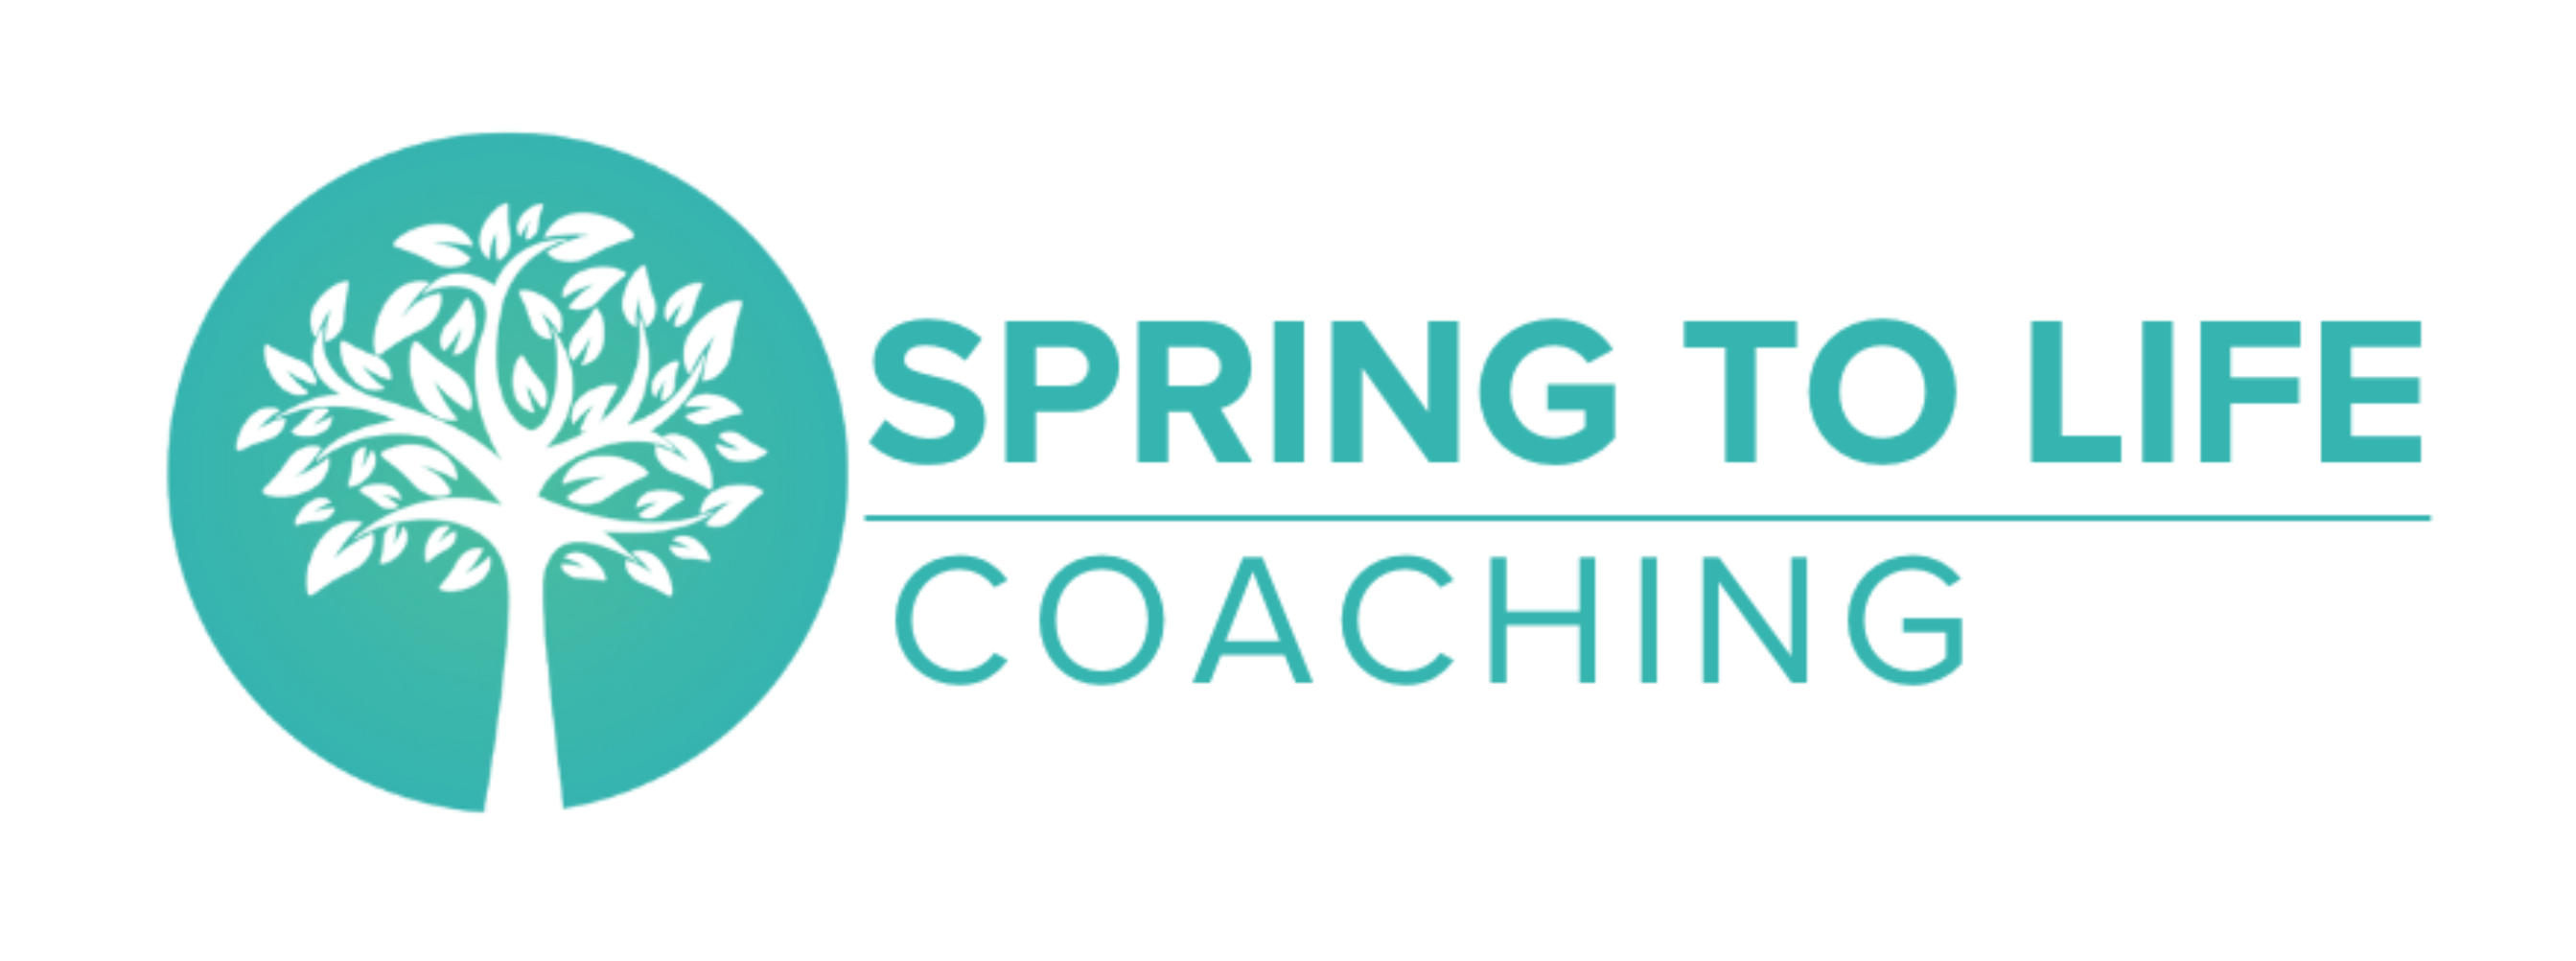 Spring to Life Coaching